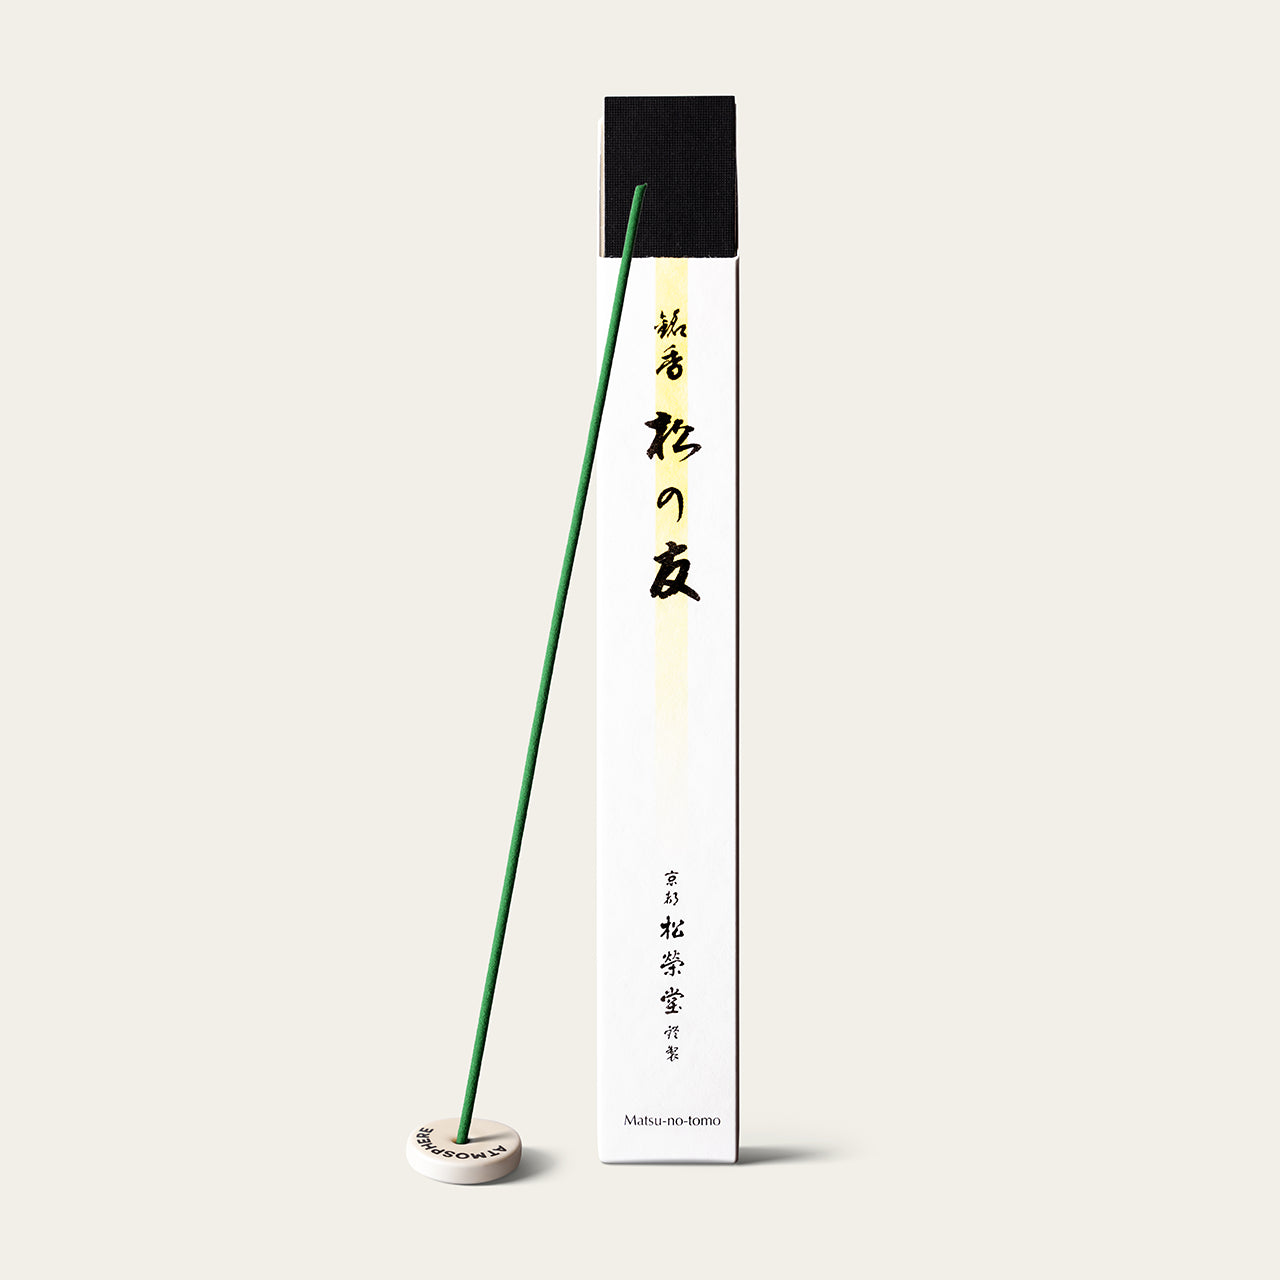 Shoyeido Premium Friend of Pine Matsu-no-tomo Japanese incense sticks (36 sticks) with Atmosphere ceramic incense holder